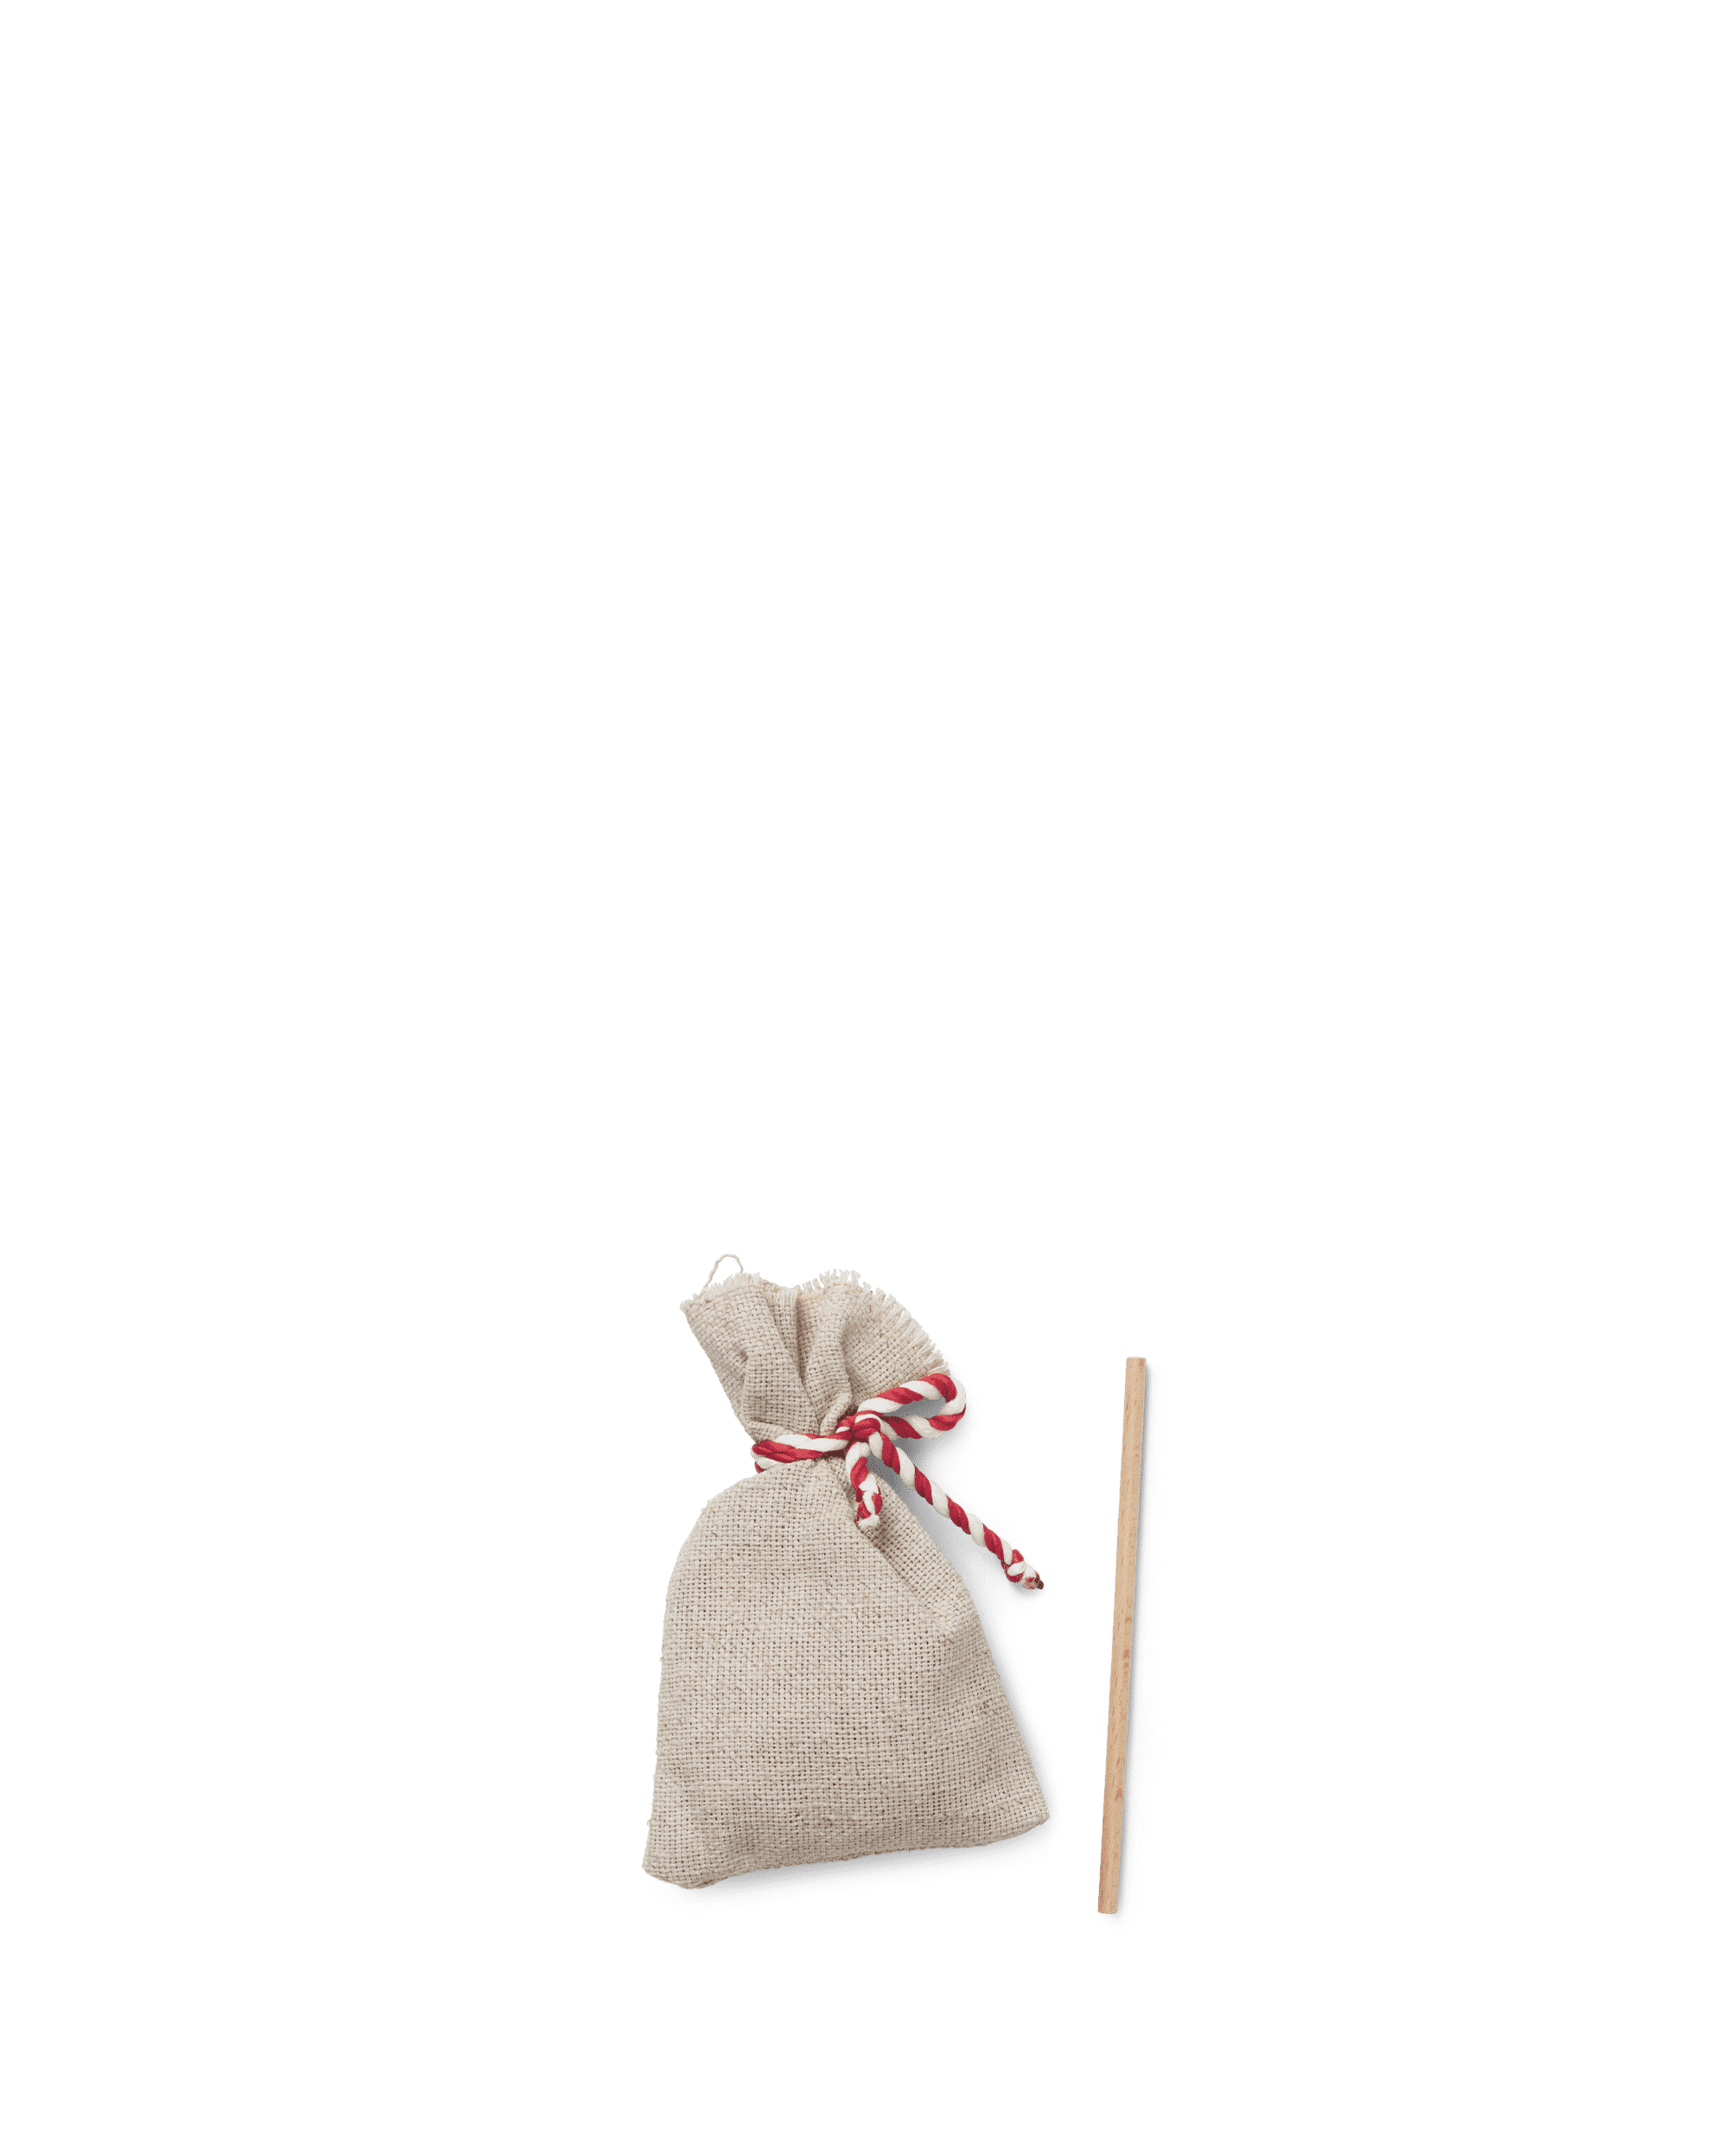 Santa's sack and stick (39430)